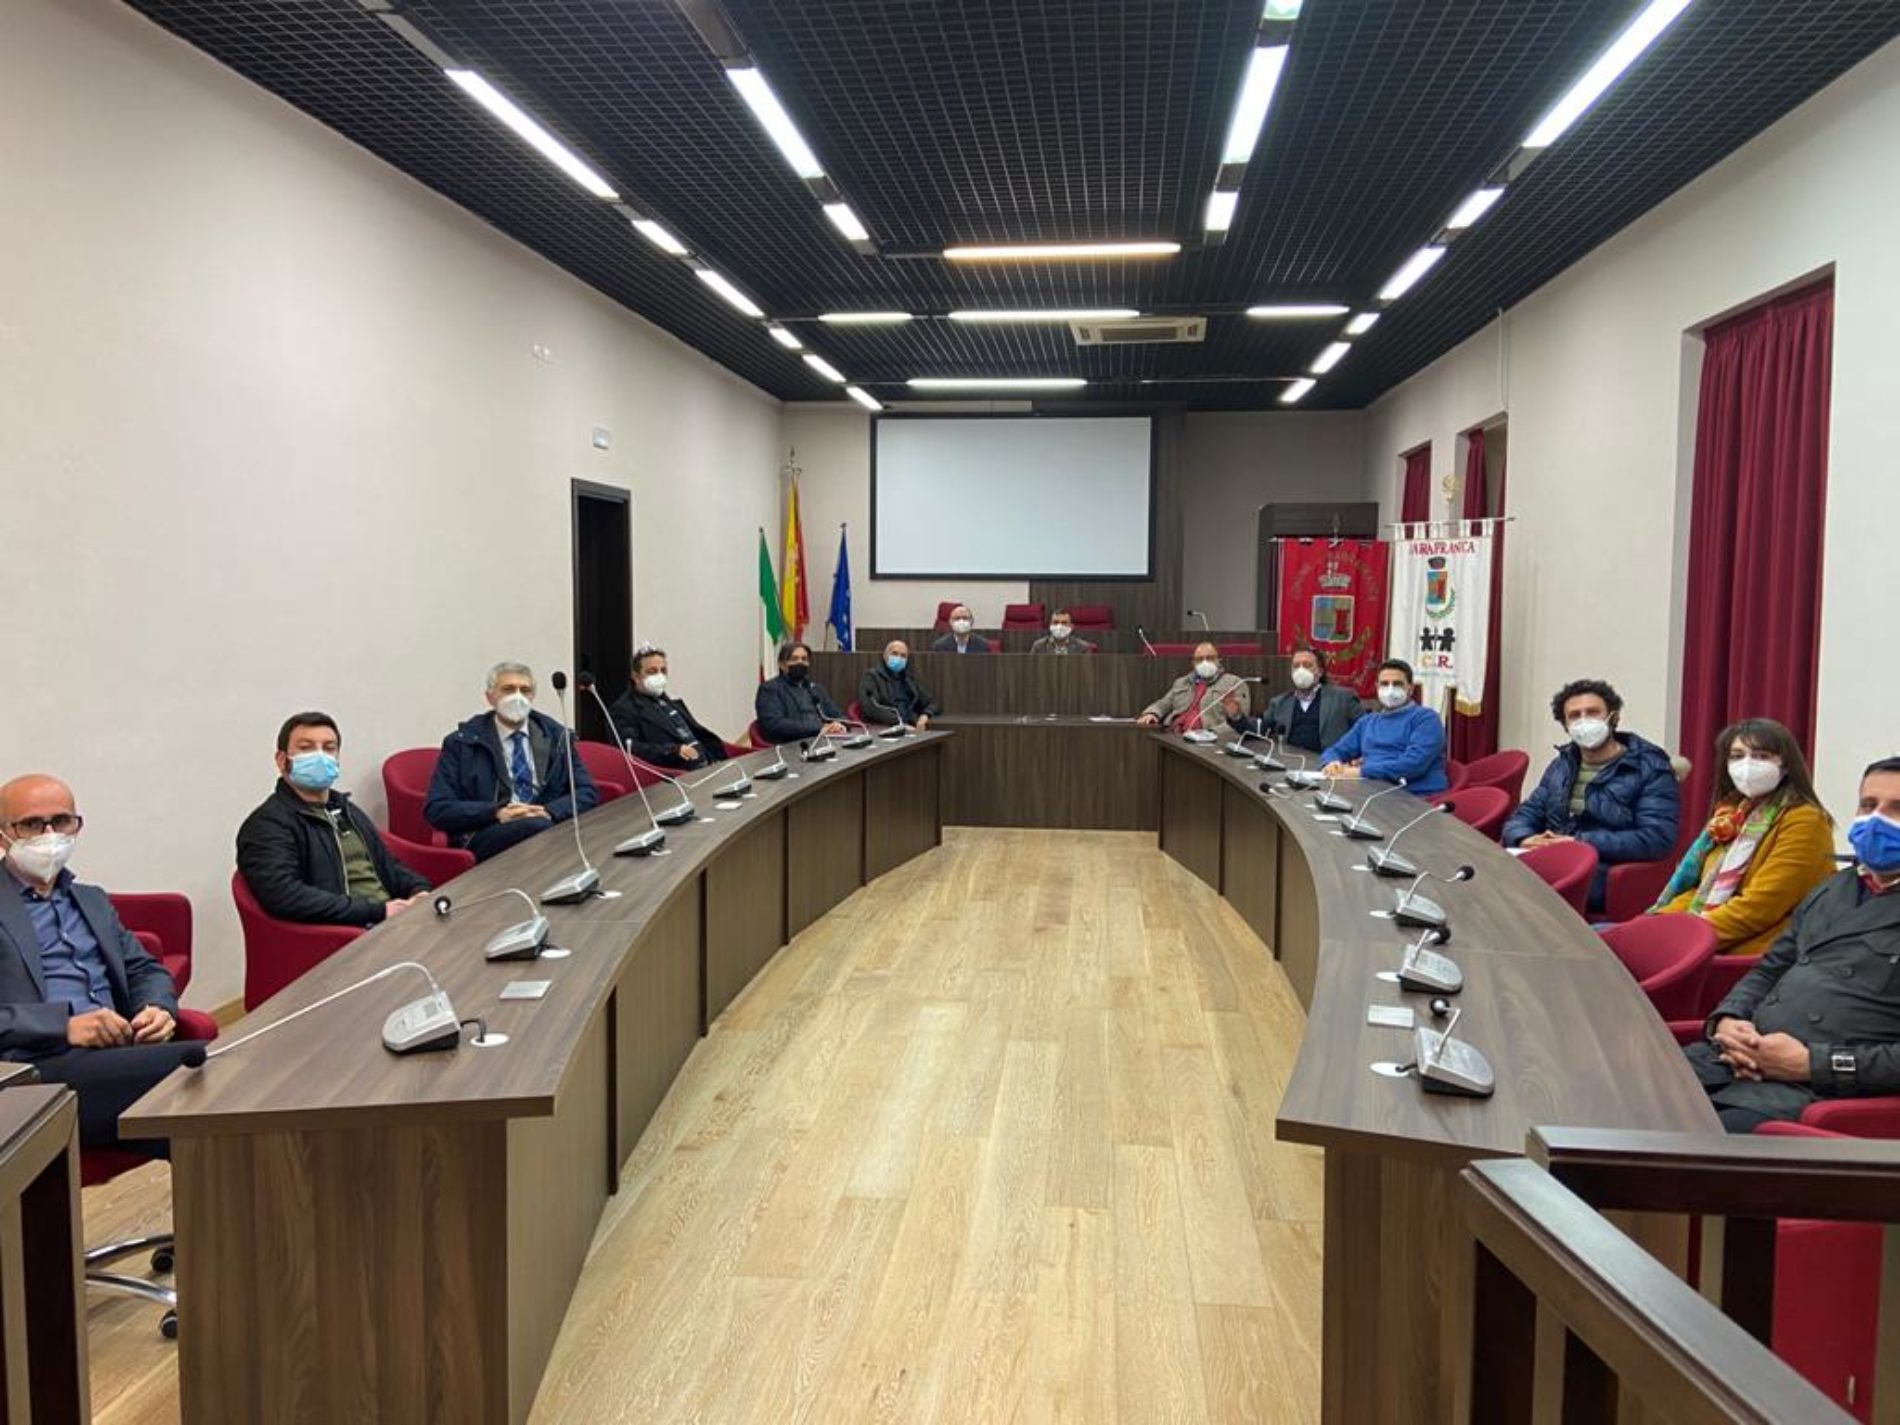 BARRAFRANCA. Il sindaco Fabio Accardi  Incontra i tecnici del Comune di Barrafranca. Tema dell’incontro il Superbonus 110 %.